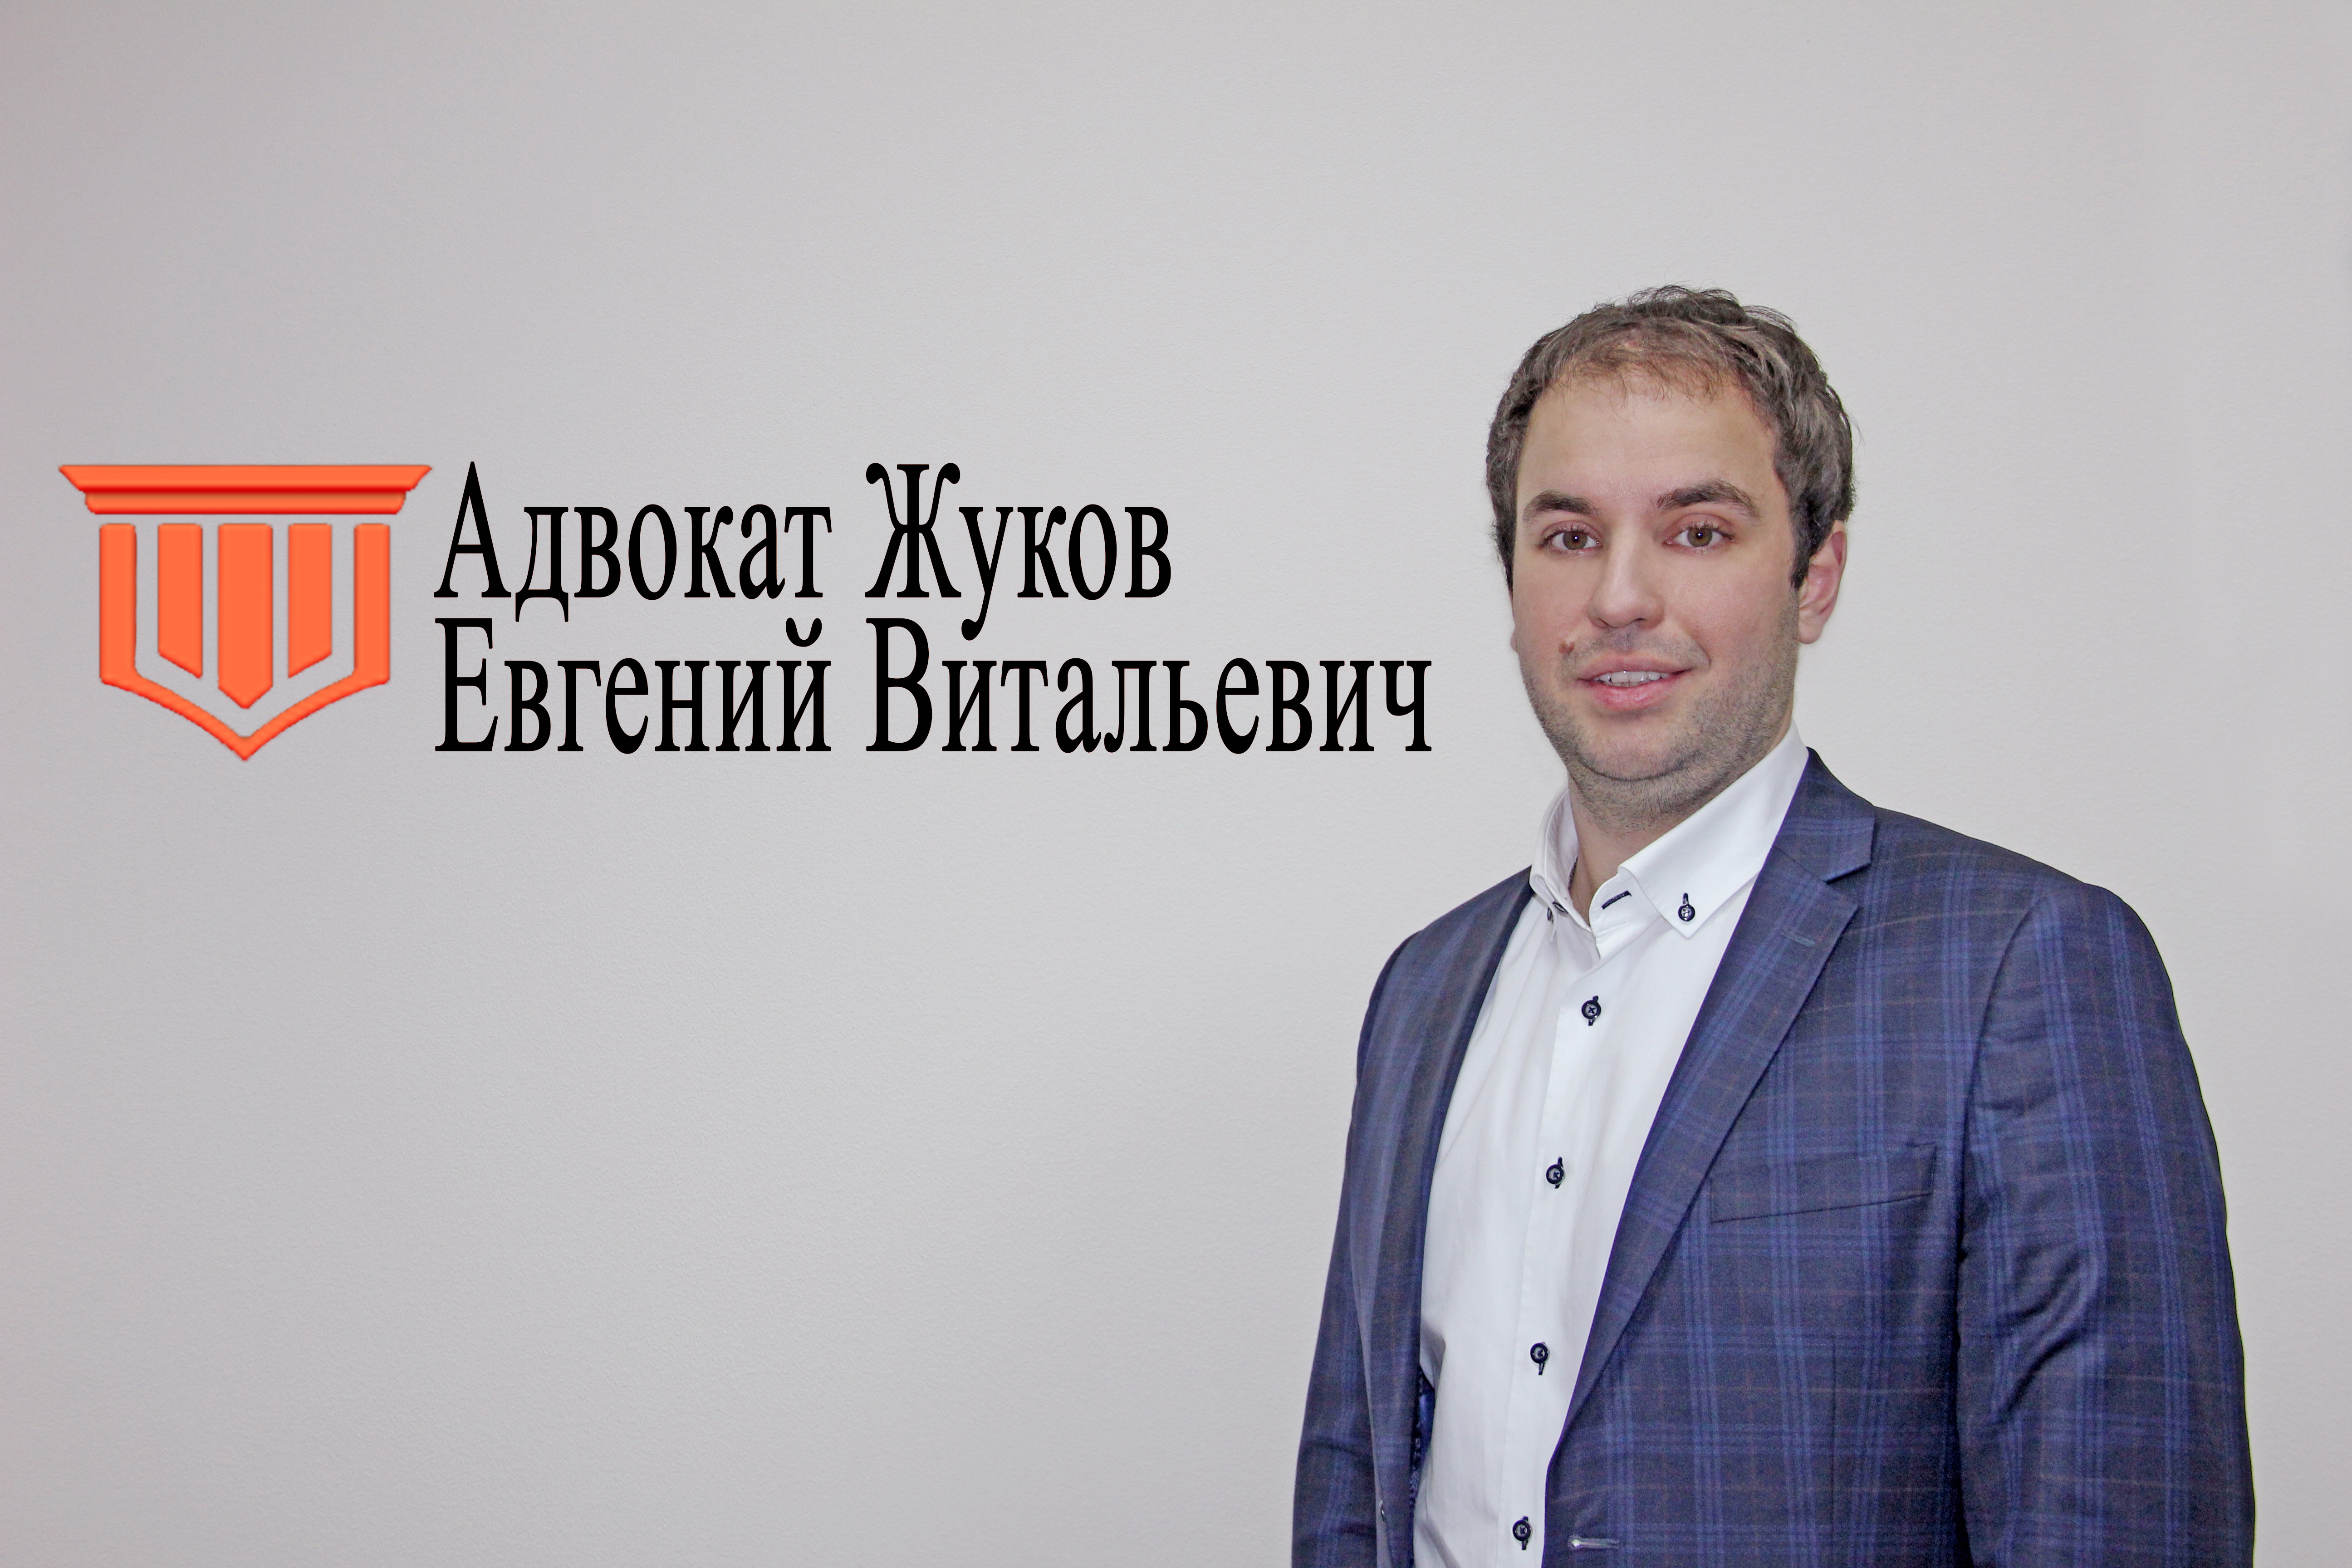 Адвокат Жуков Евгений Витальевич